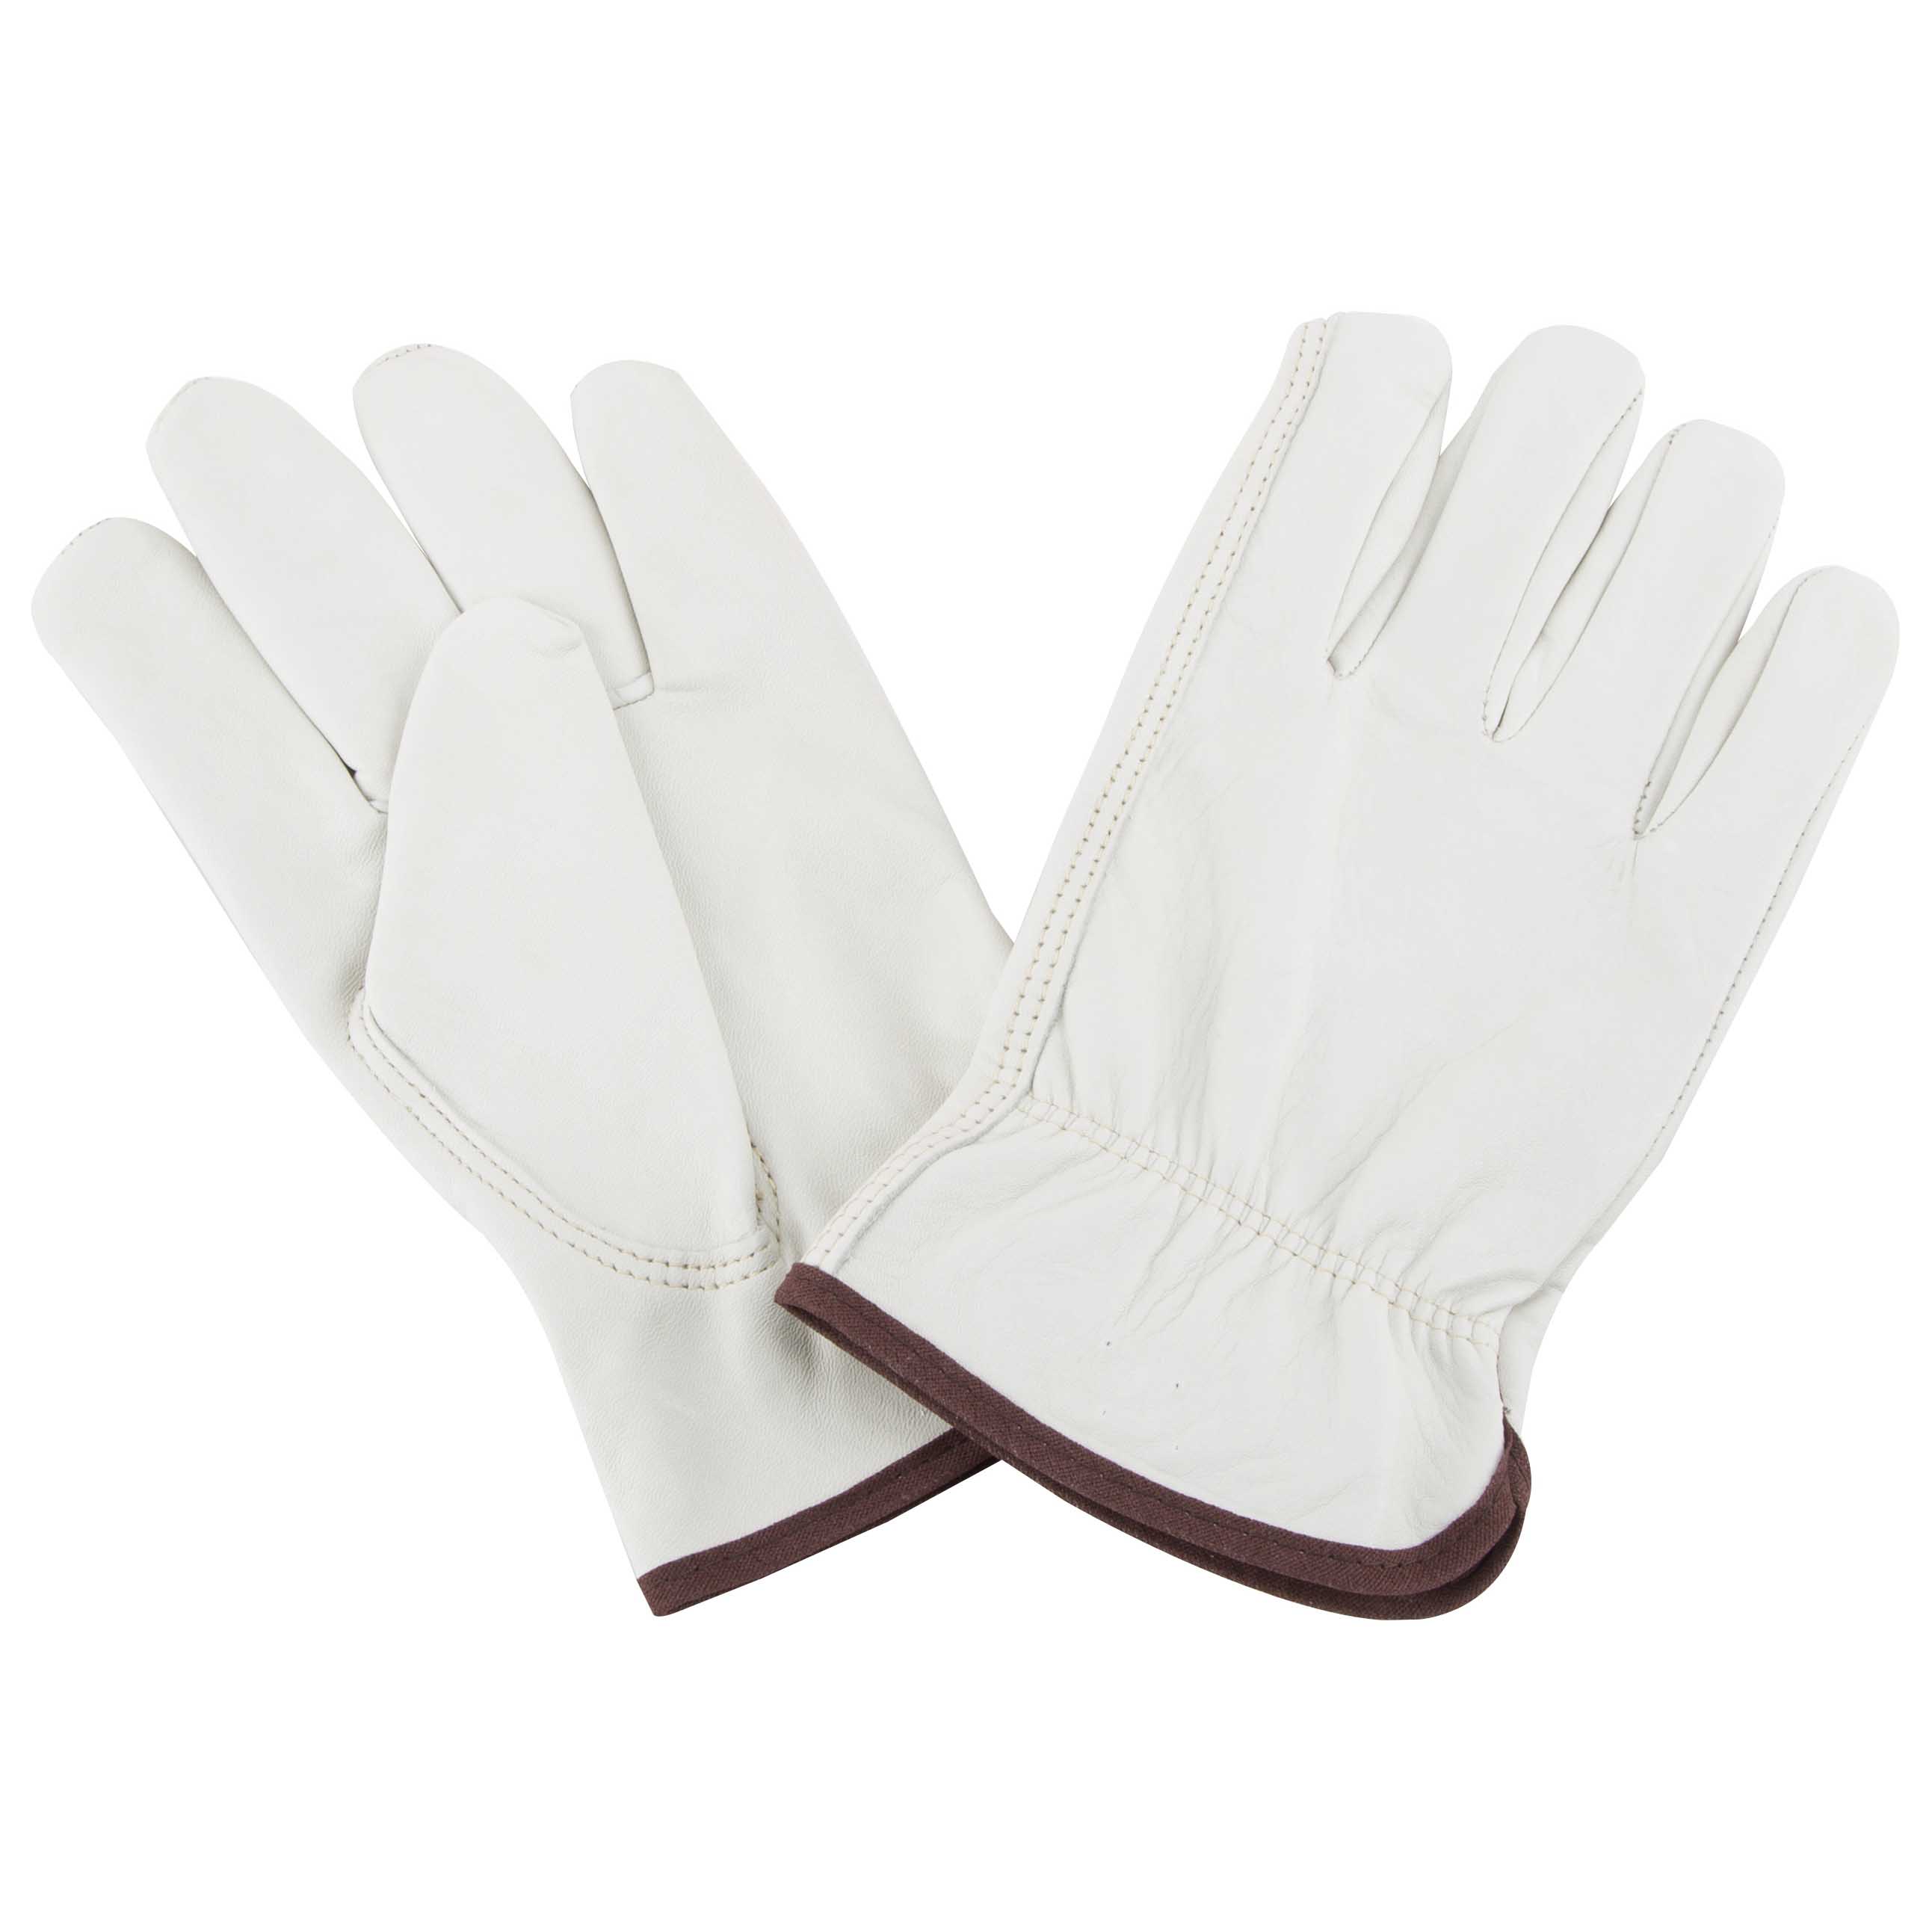 GV-DK603/B/L Driving Gloves, Men's, L, Keystone Thumb, Elastic Cuff, Grain Leather